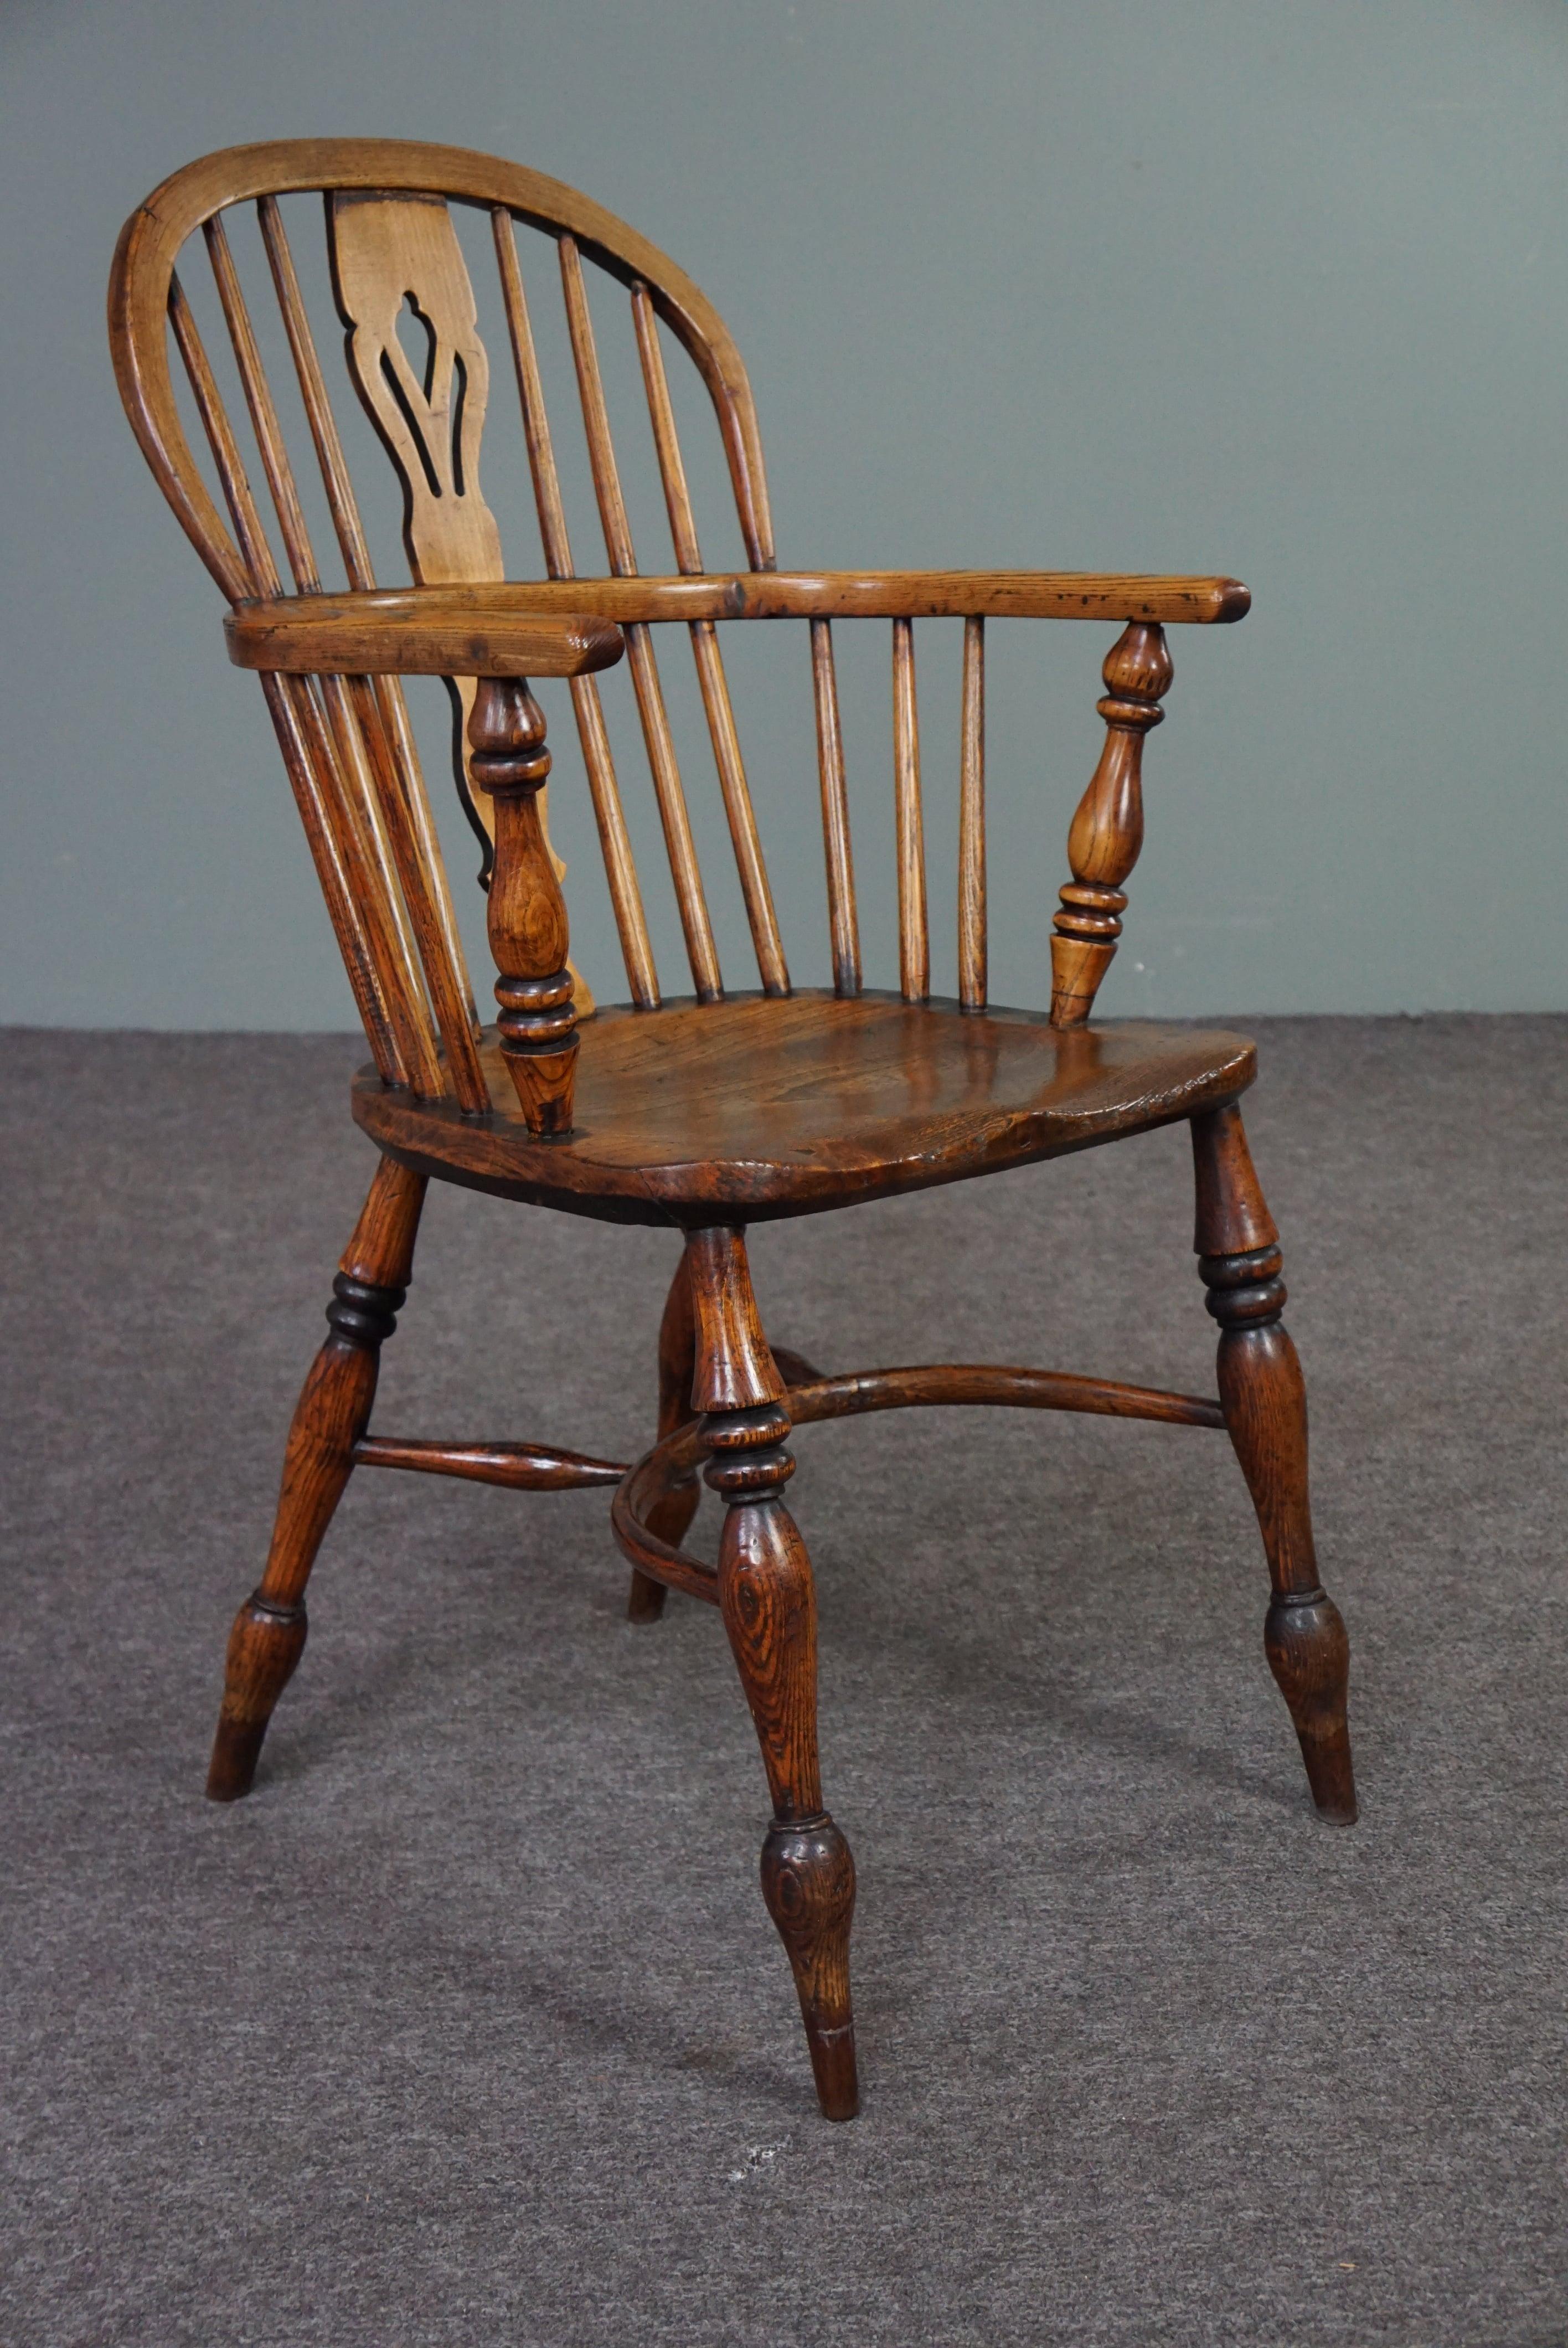 Angeboten wird dieser schöne antike Sessel aus Massivholz mit einem sehr schönen charakteristischen Aussehen.

Dieser auffällige englische antike Windsor-Sessel mit Armlehnen hat einen wohlgeformten dicken Massivholzsitz. Der Stuhl hat charmante